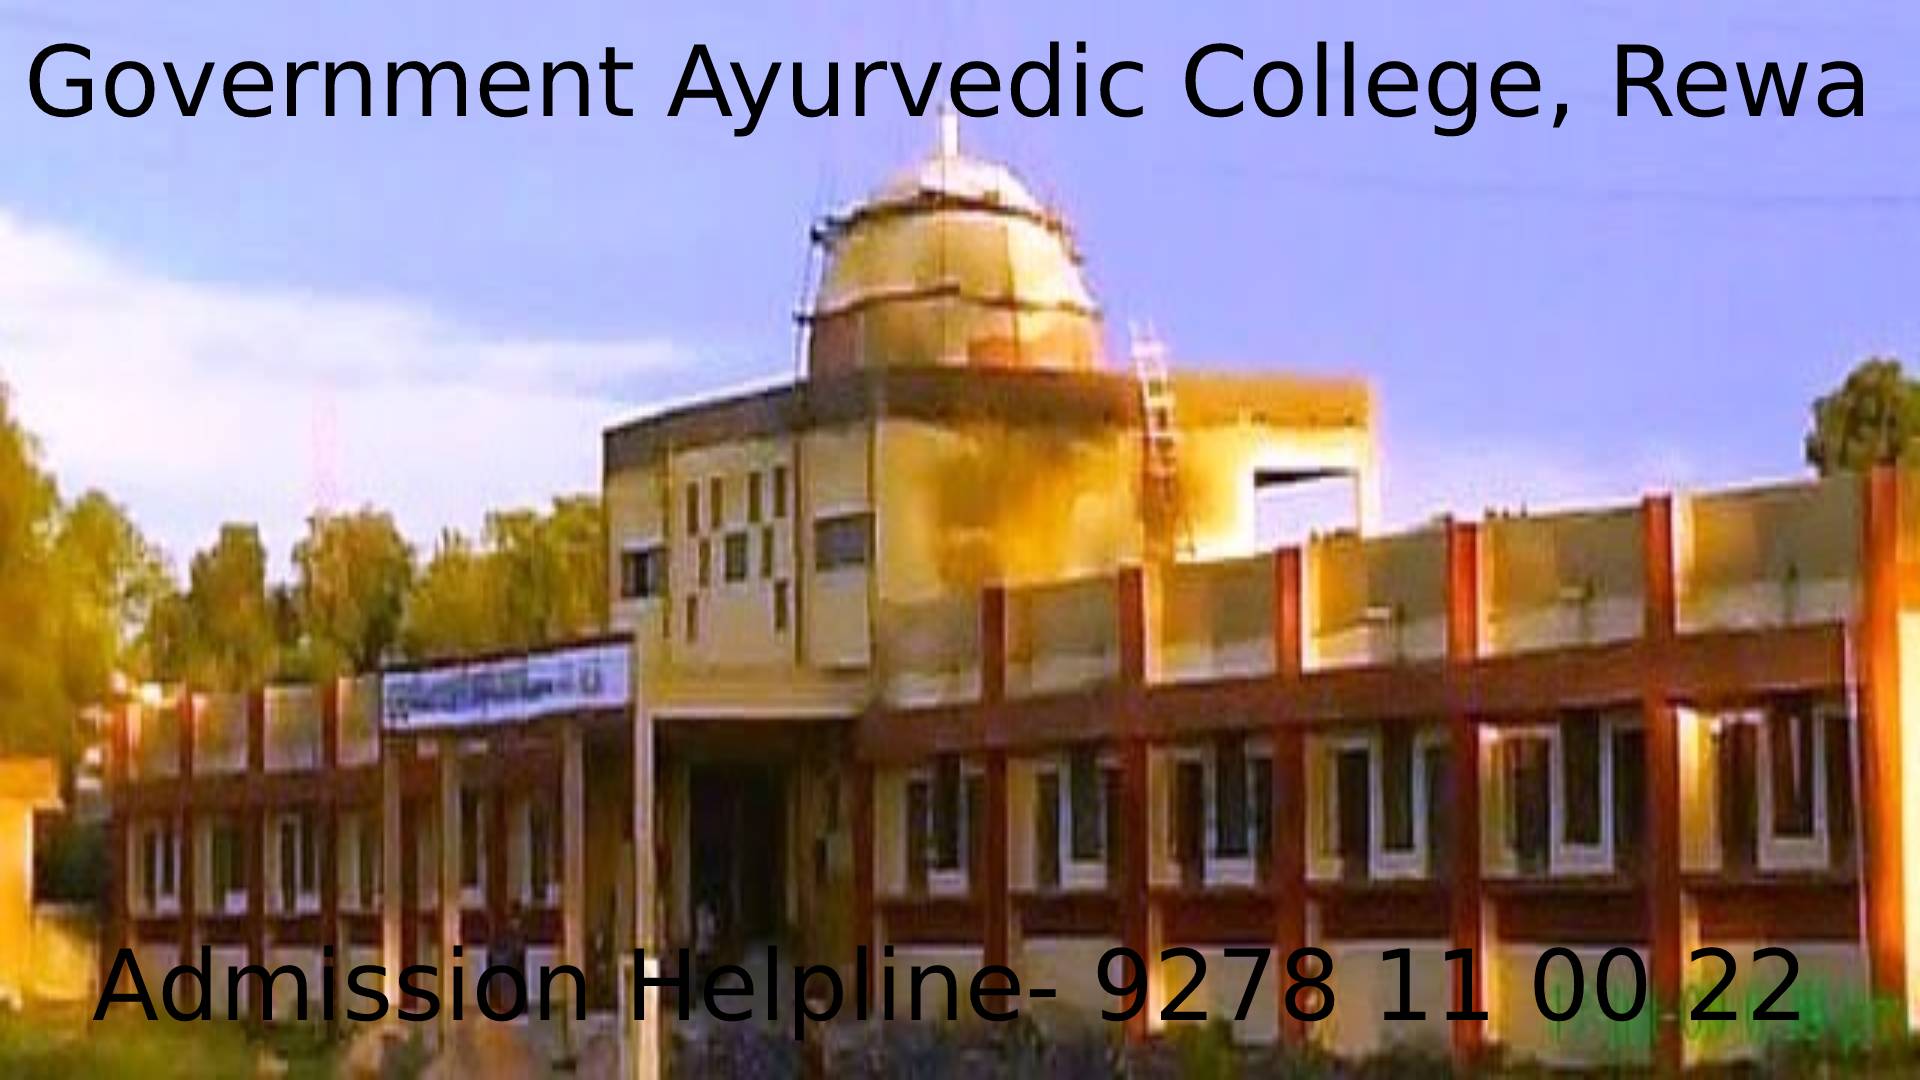 Government Ayurvedic College, Rewa